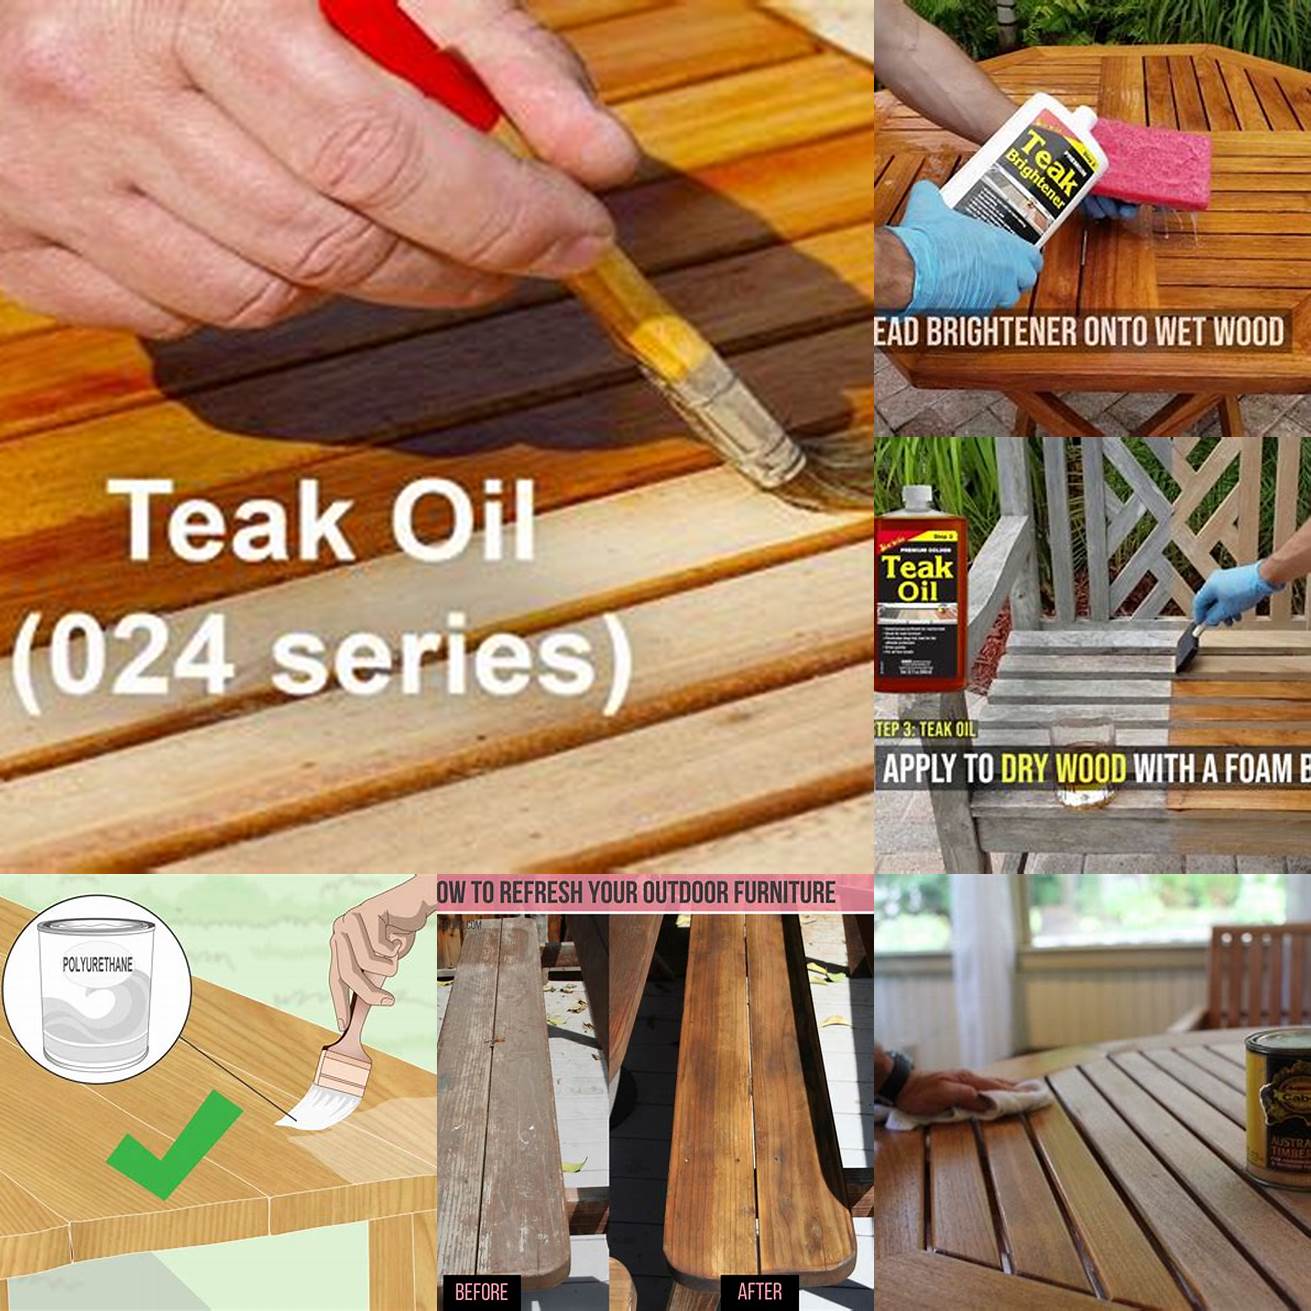 Step-by-step photos of applying teak oil